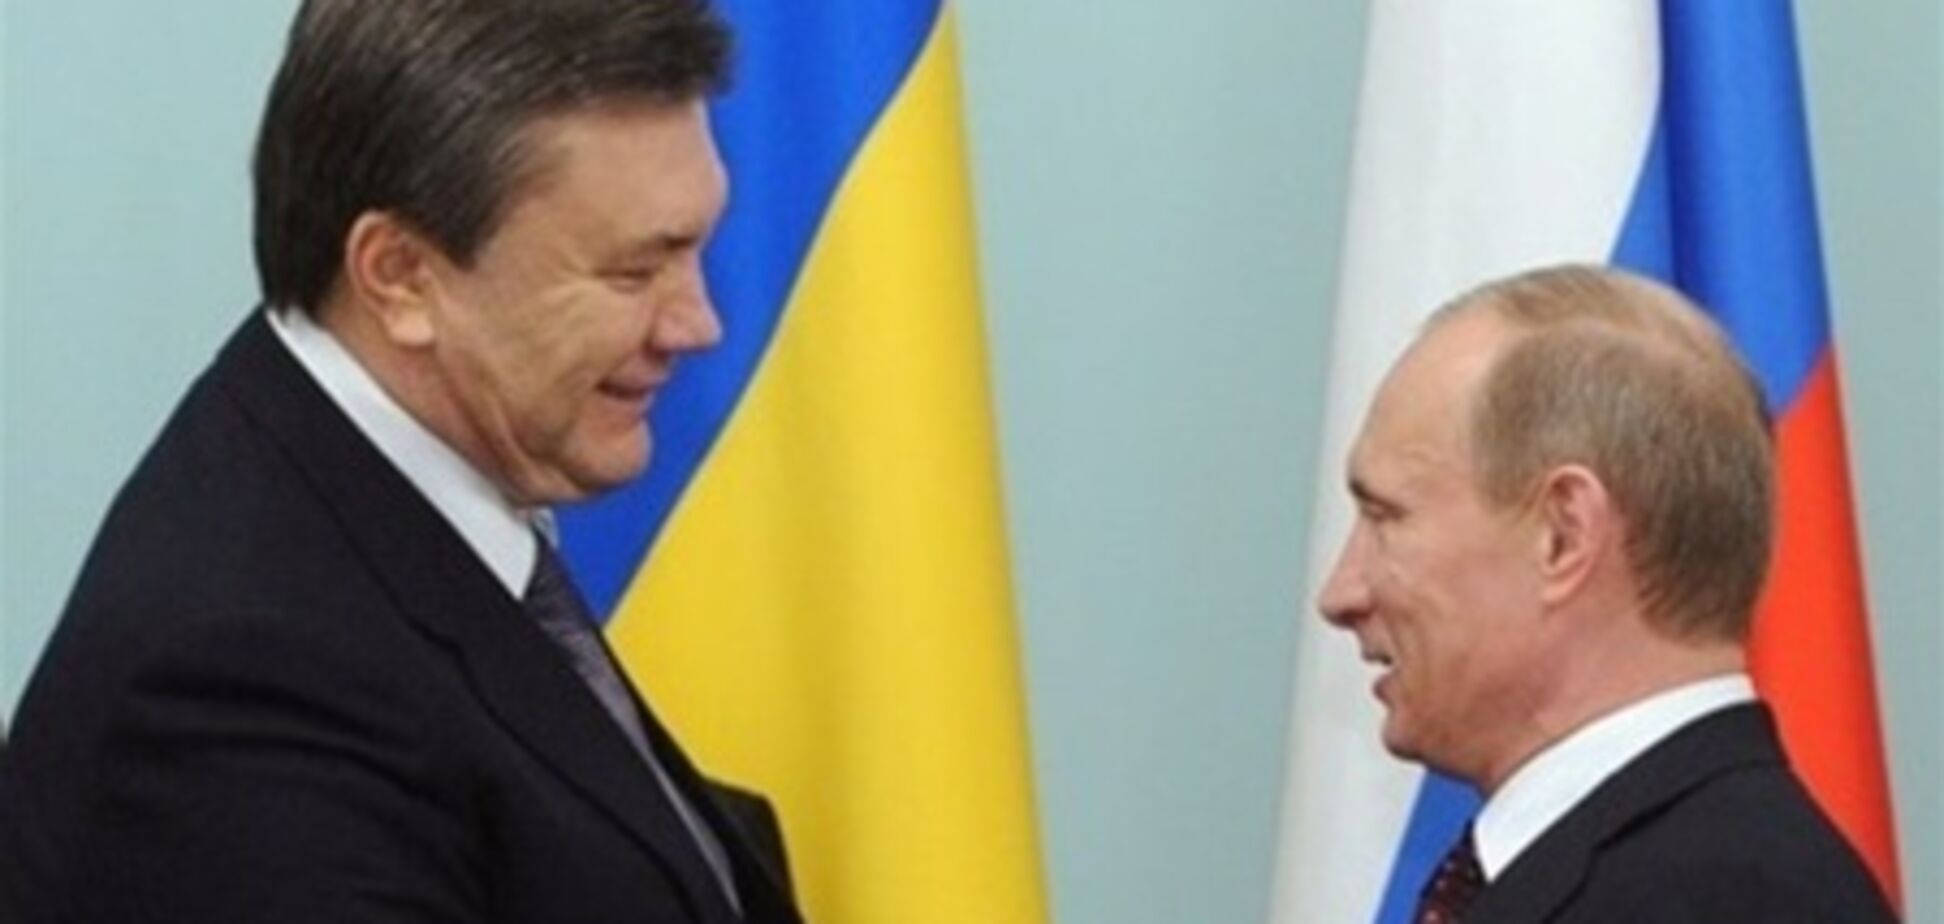 Янукович и Путин могут встретиться 29 мая - Зурабов